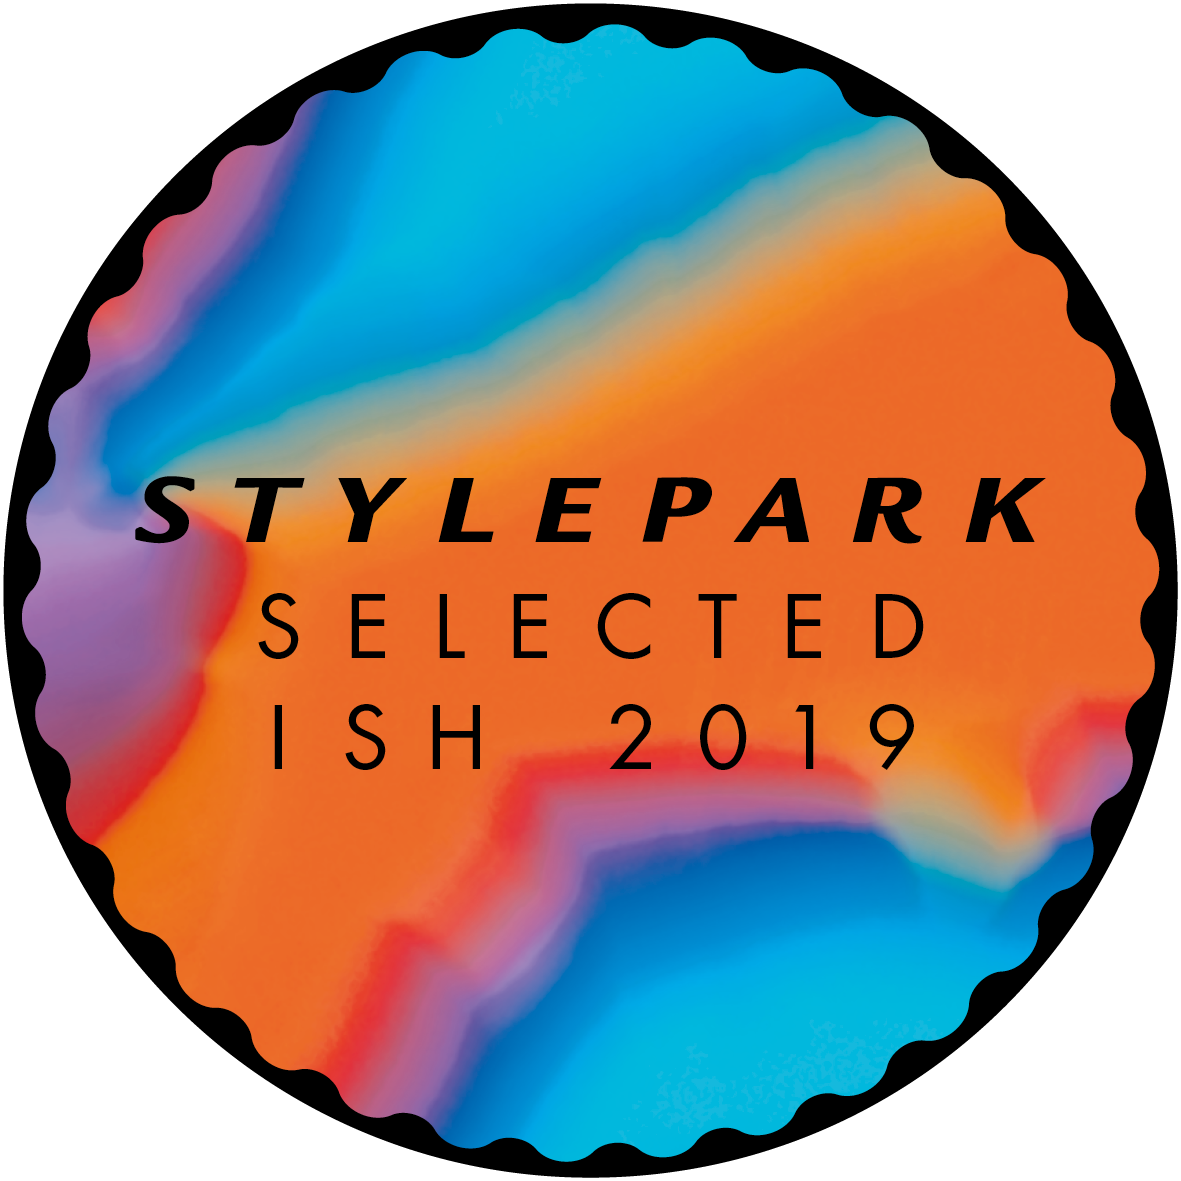 Stylepark Selected Award at ISH 2019